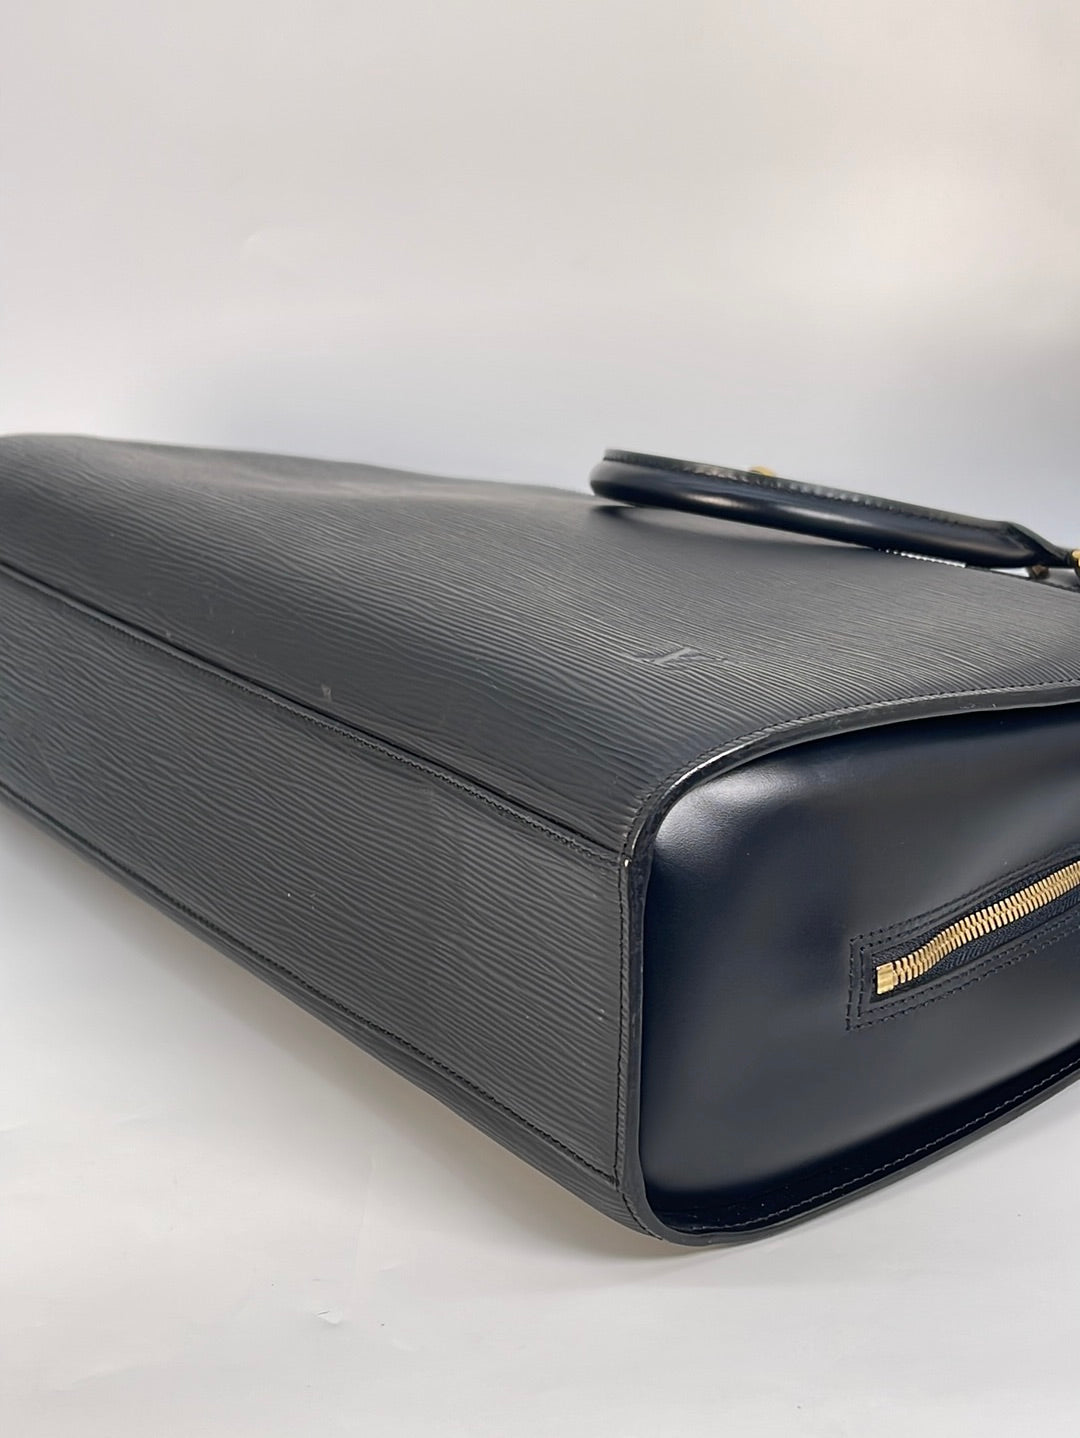 LOUIS VUITTON Epi Sorbonne School Business Laptop Briefcase Black AUTHENTIC